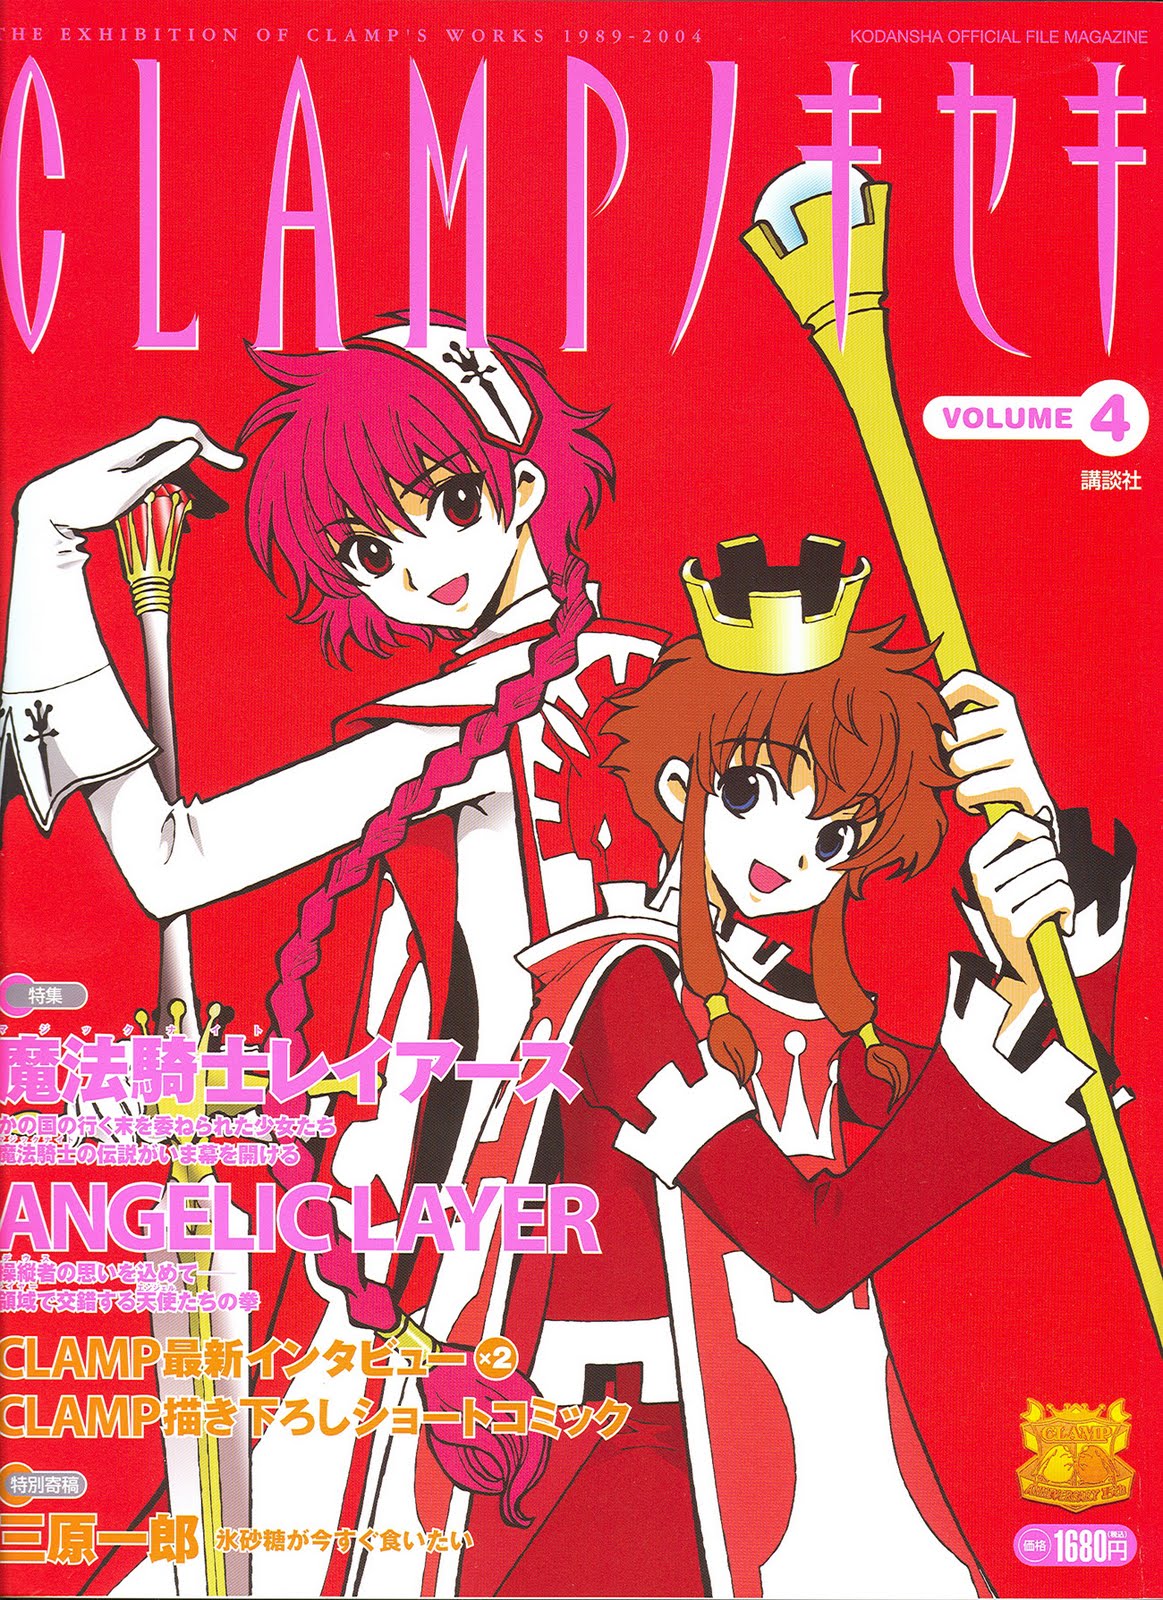 Book JAPAN Clamp No Kiseki vol.1 "Cardcaptor Sakura" Not With Chess Pieces 